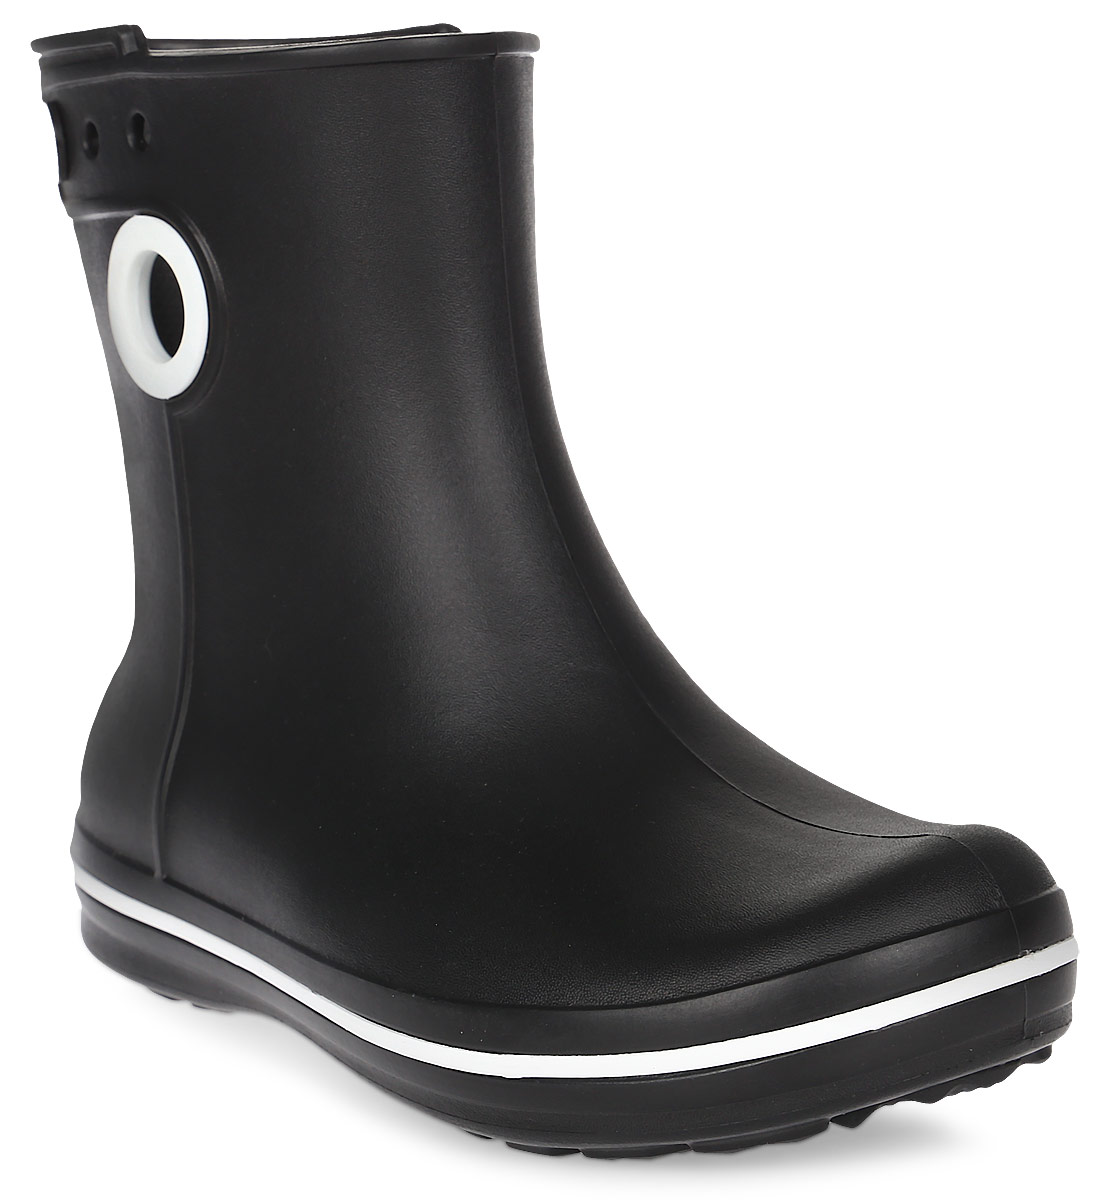 Полусапоги резиновые женские Crocs Jaunt Shorty Boot, цвет: черный. 15769-001. Размер 7 (37)